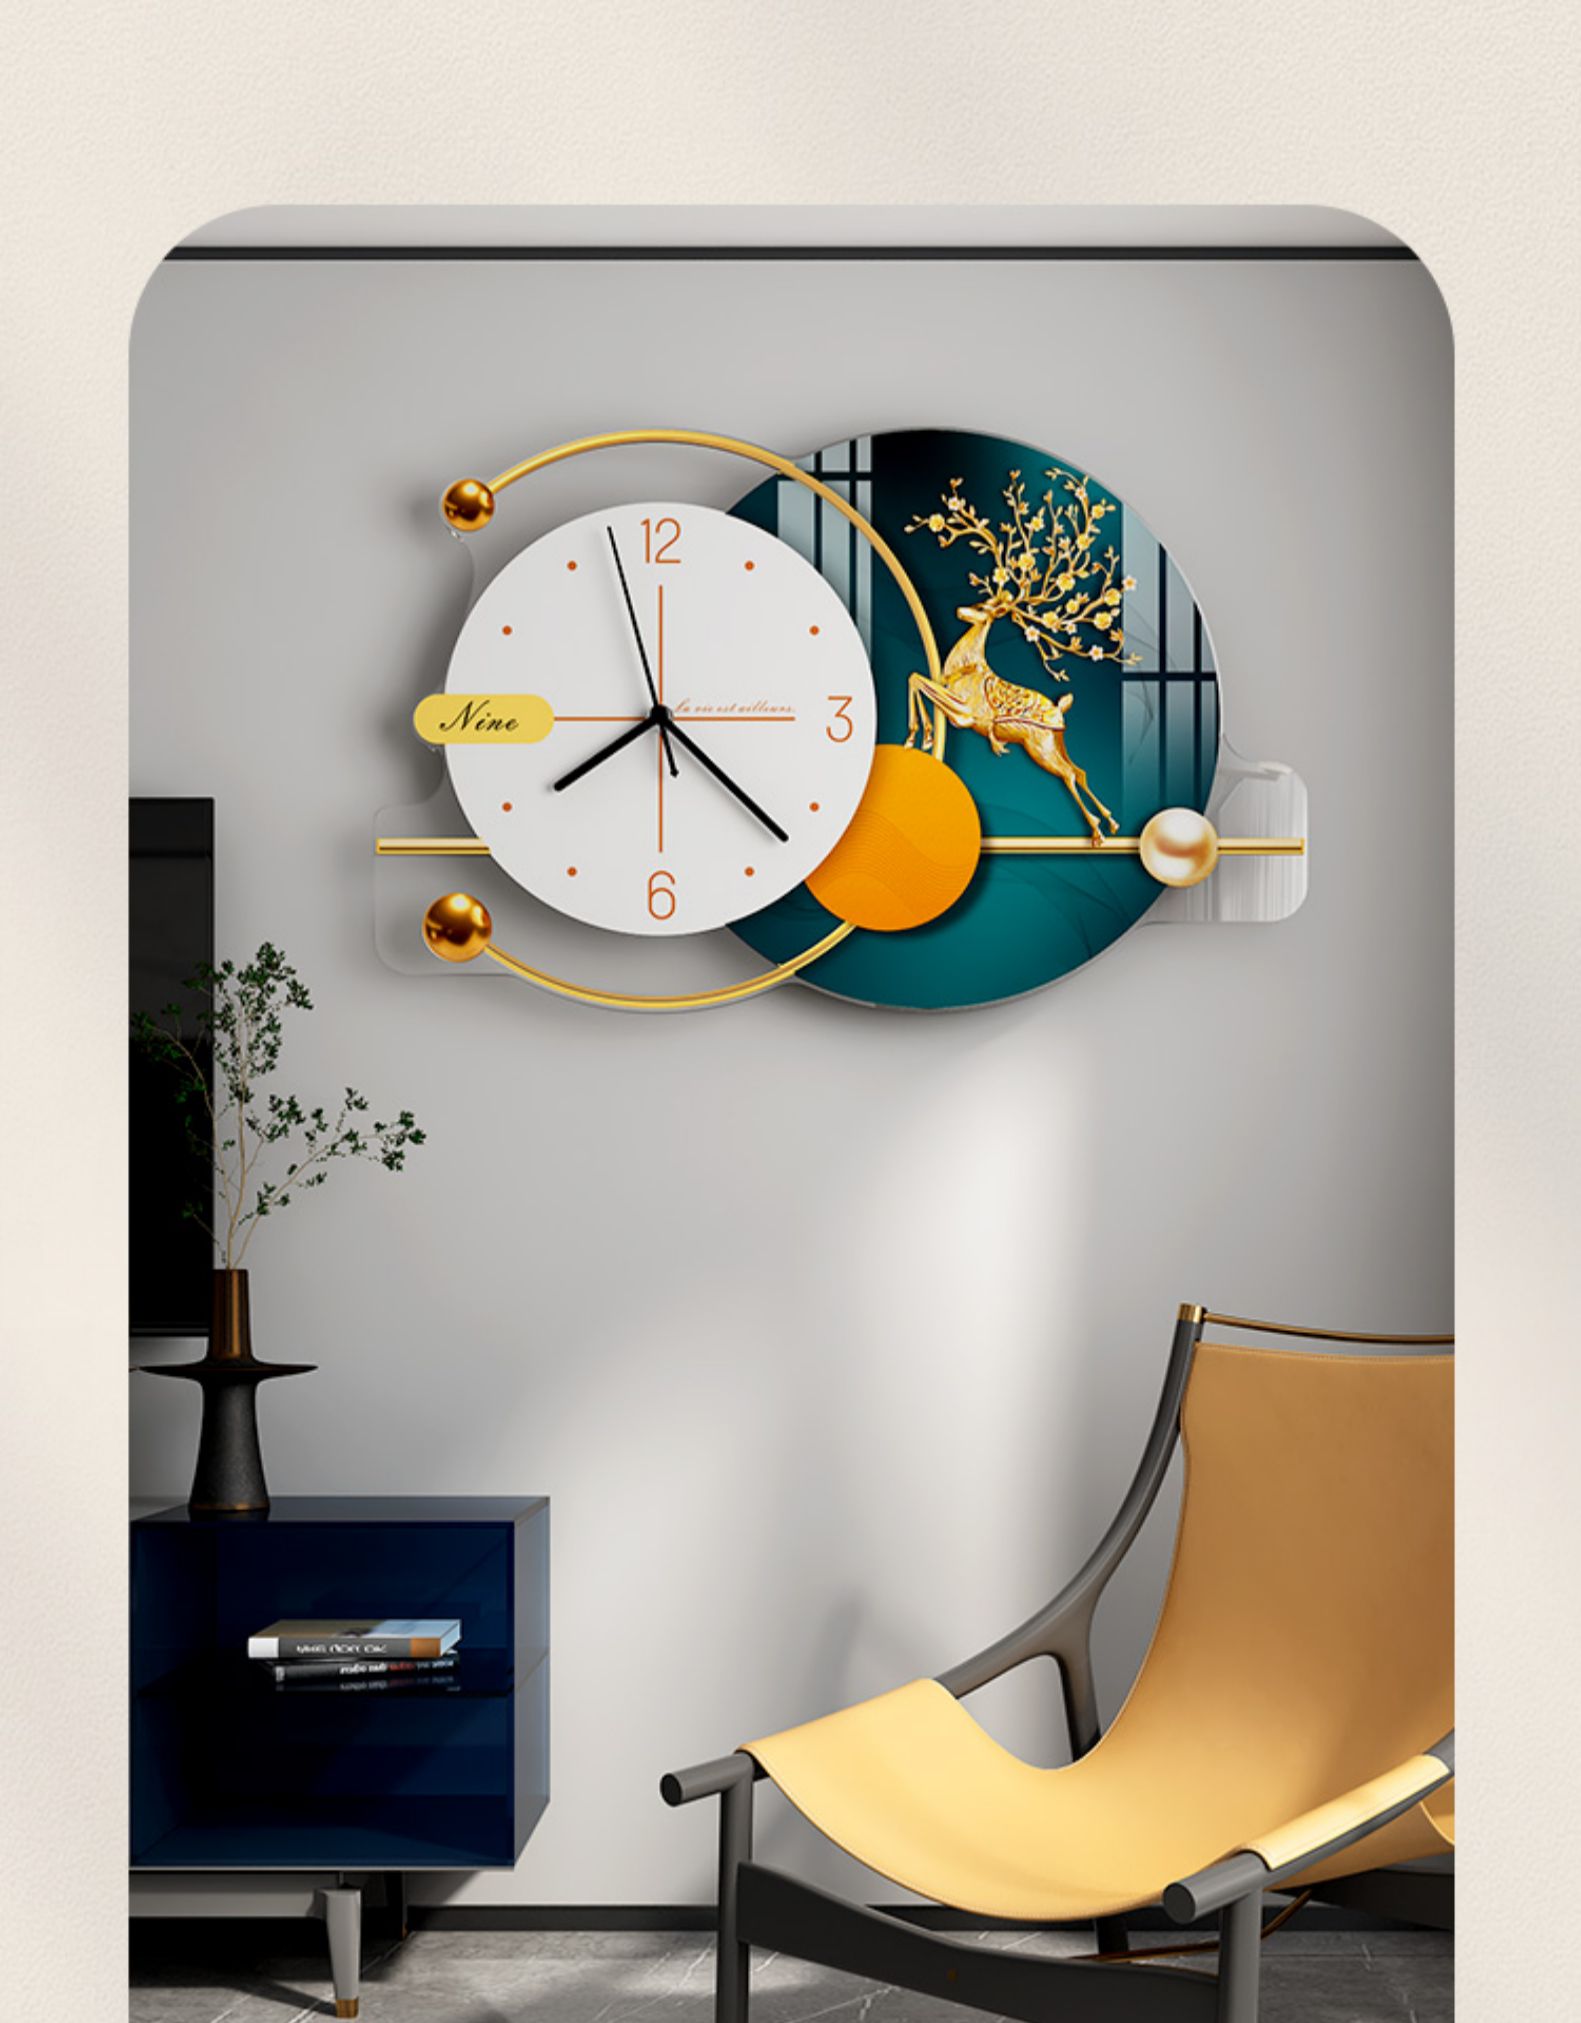 挂钟客厅家用时尚钟表简约现代大气创意时钟挂墙主图款大号62540cm20